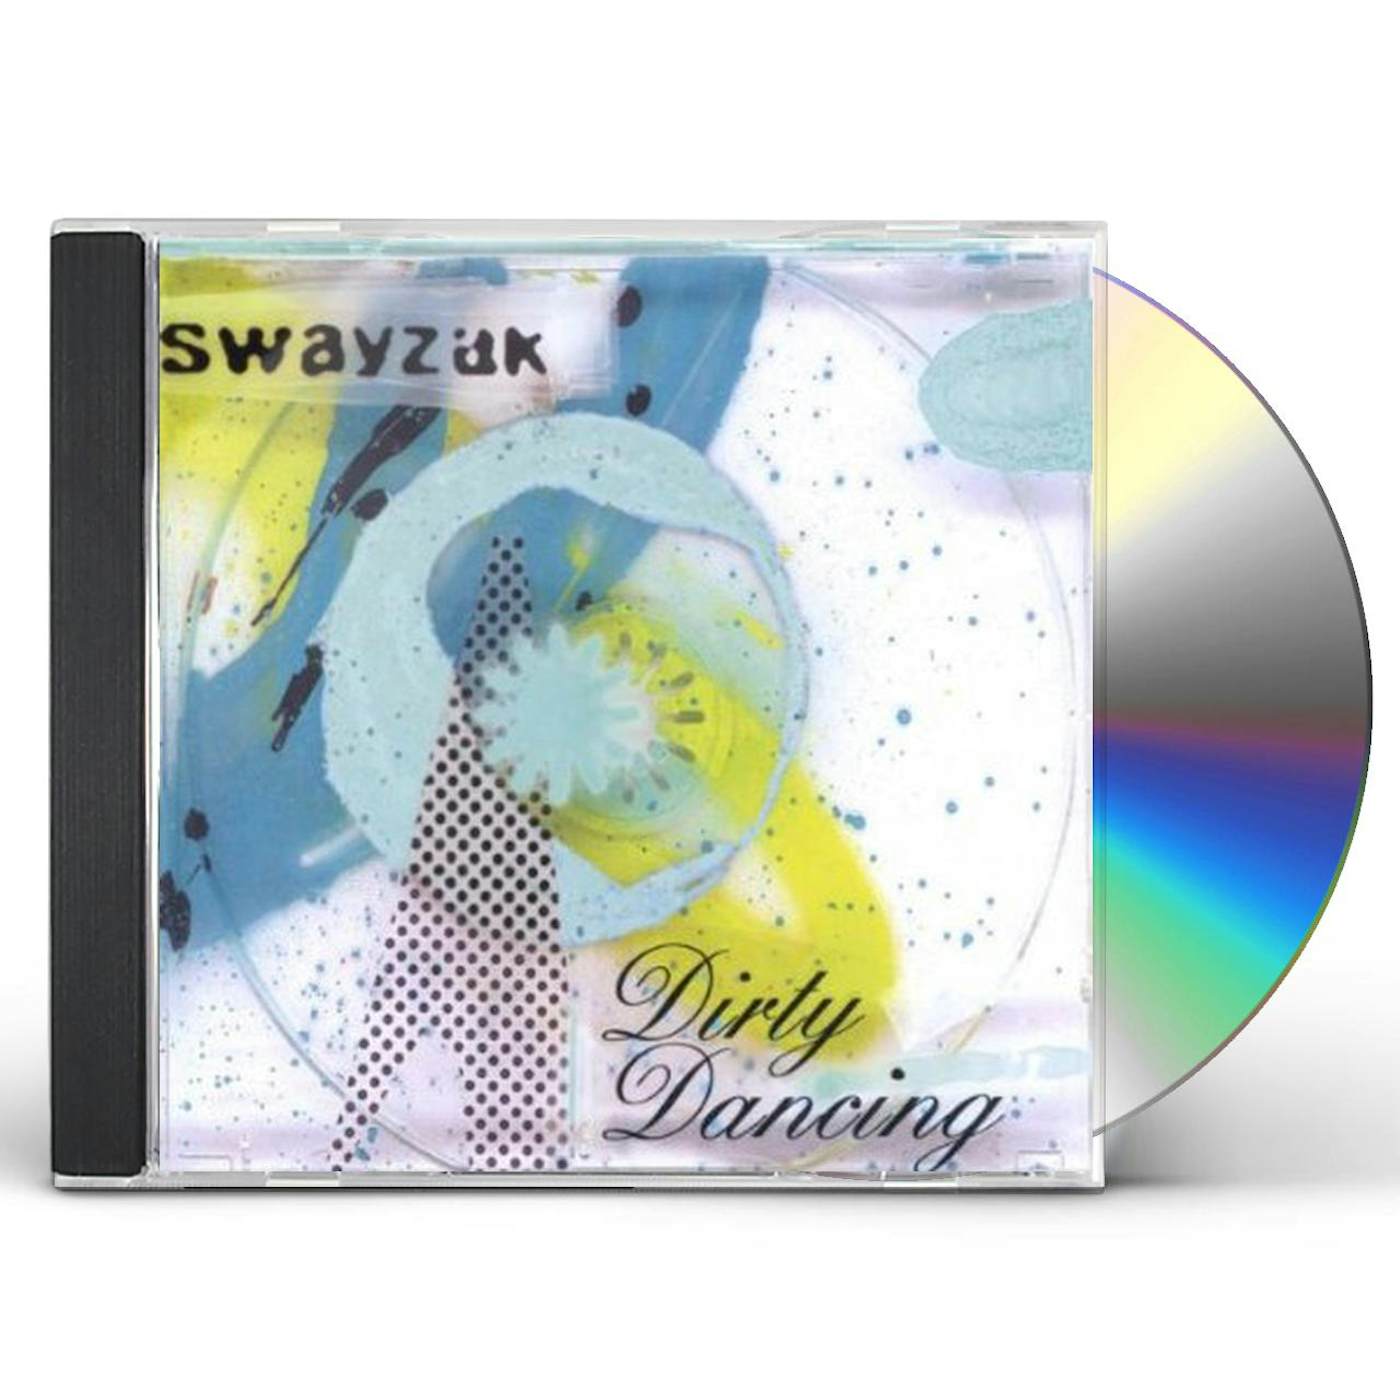 Swayzak DIRTY DANCING CD